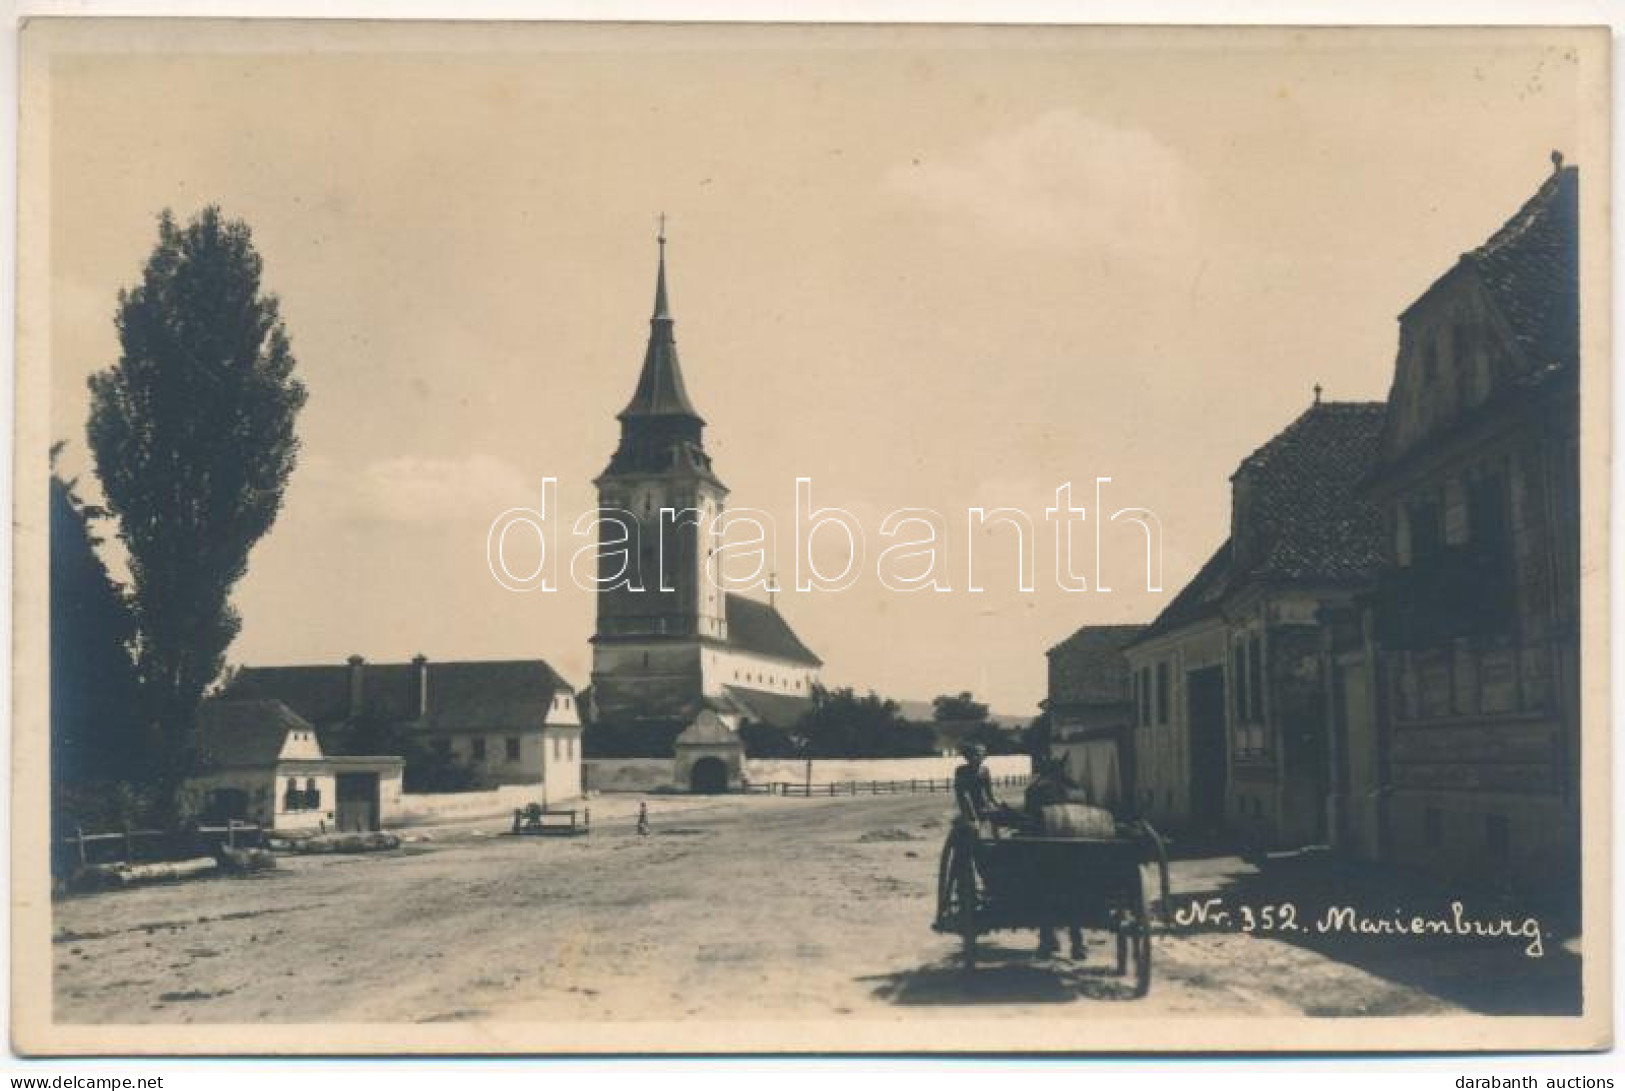 * T2/T3 Barcaföldvár, Földvár, Marienburg, Feldioara; Evangélikus Erődtemplom / Lutheran Castle Church. Photo (fl) - Ohne Zuordnung